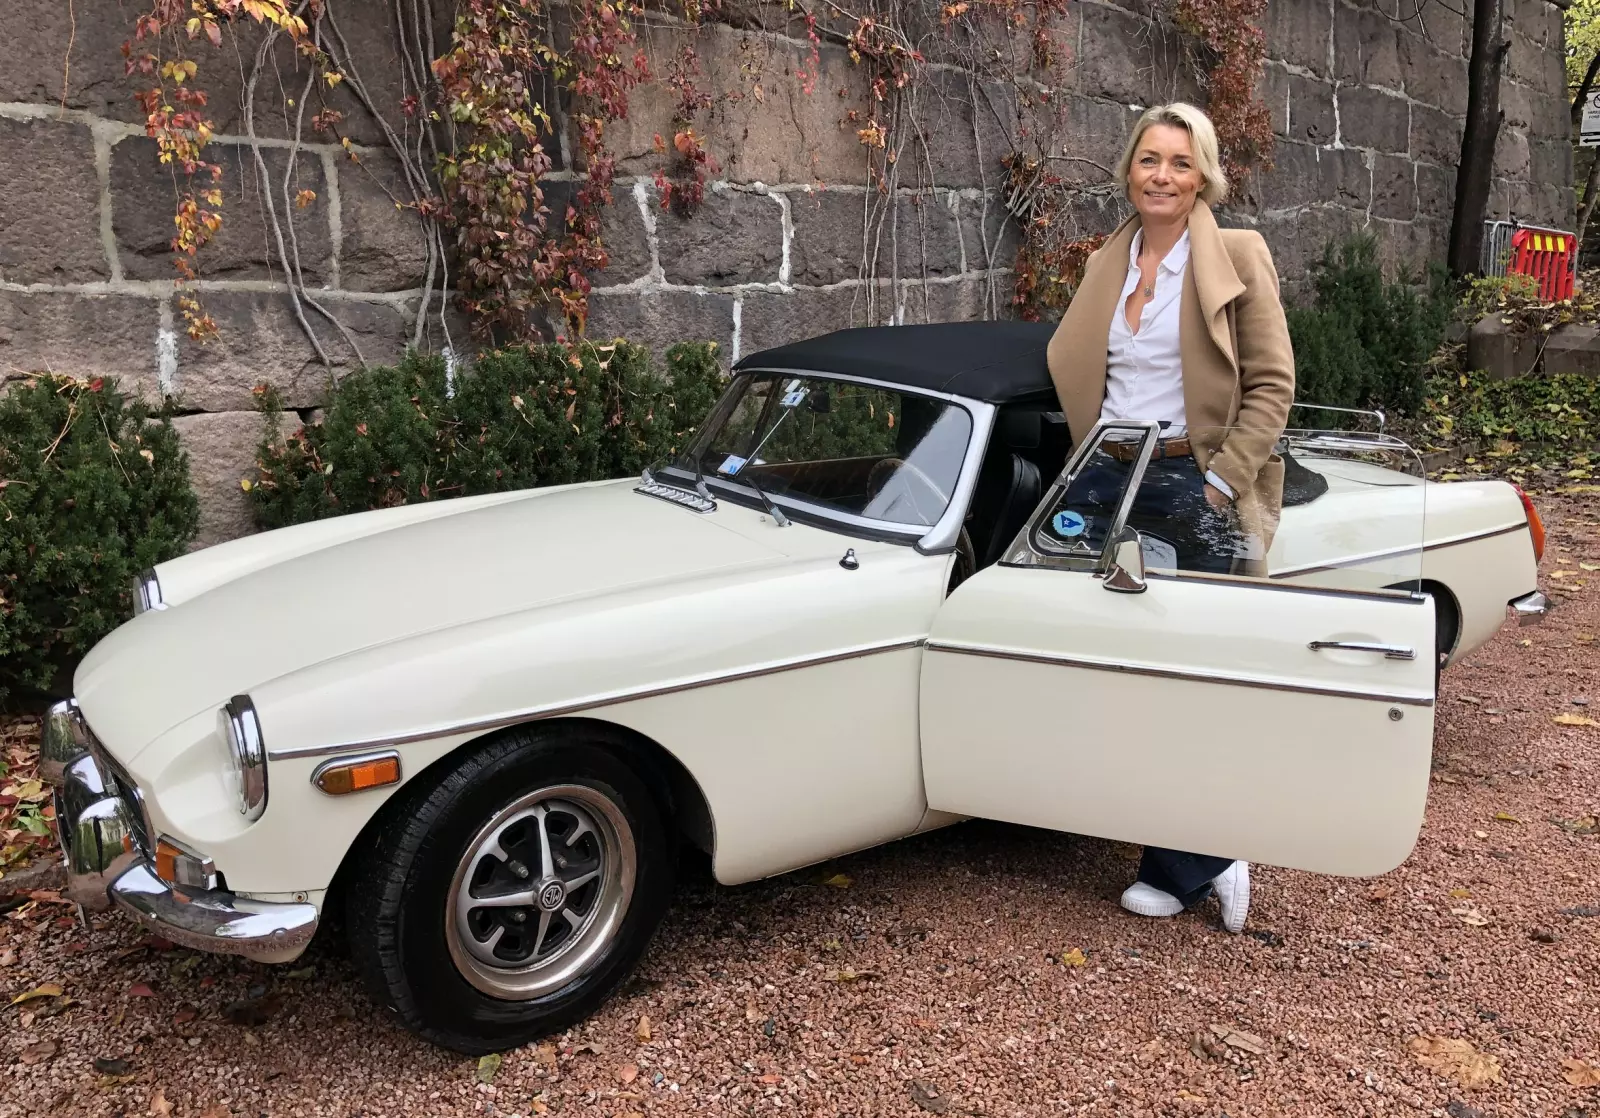 <strong>KLASSISK LYKKEPILLE: </strong>Vibeke Christiansen i Oslo valgte MG fordi hun liker gamle, engelske biler. Hun kjører en klassisk MG med stofftak, bagasjebrett og mye historie.